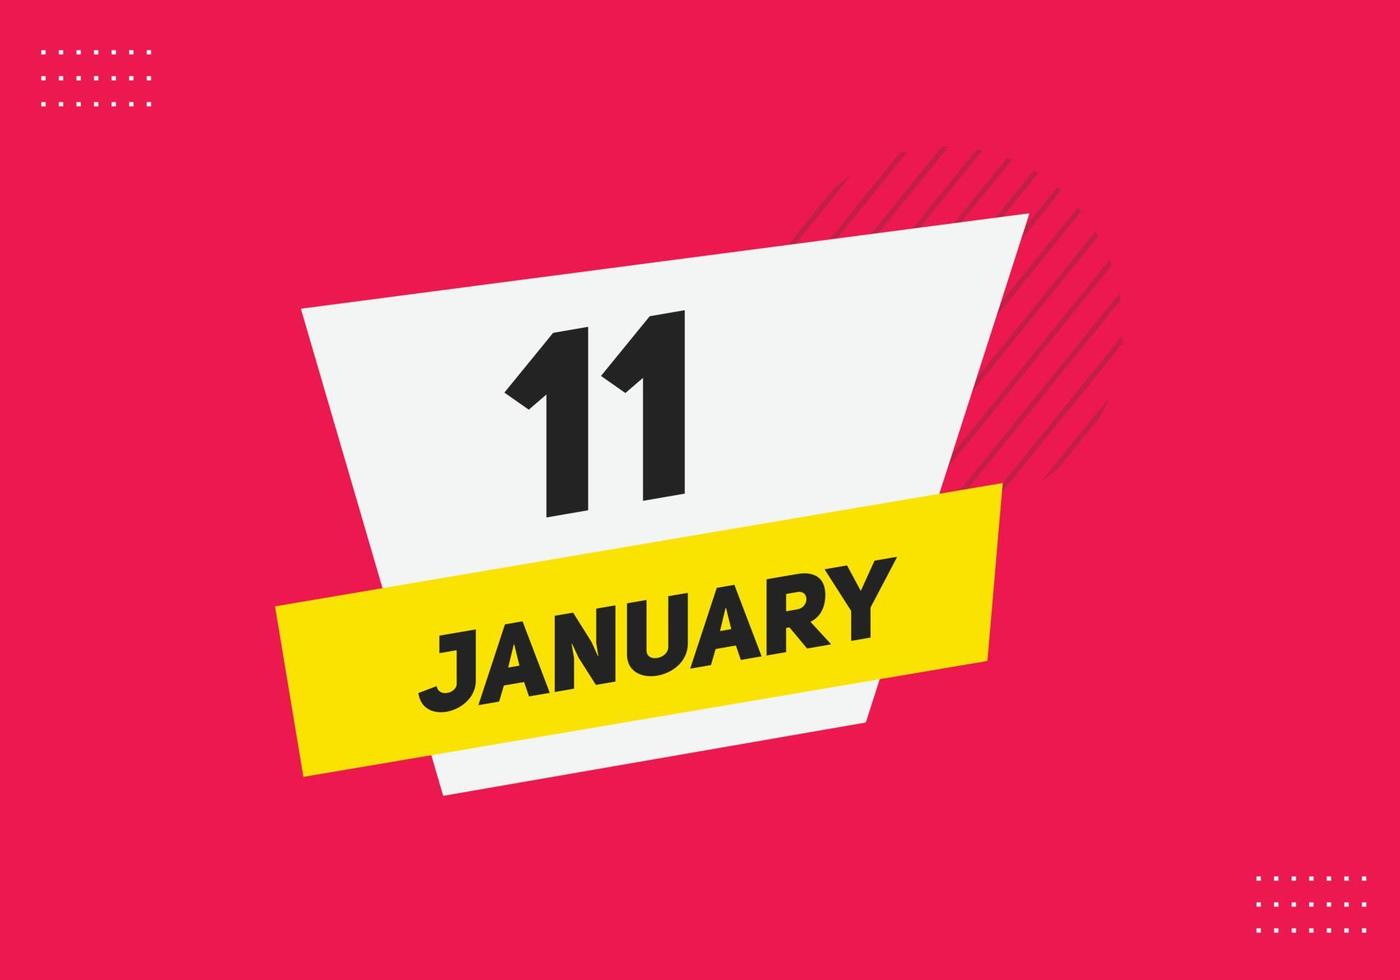 11. januar kalender erinnerung. 11. januar tägliche kalendersymbolvorlage. Kalender 11. Januar Icon-Design-Vorlage. Vektor-Illustration vektor